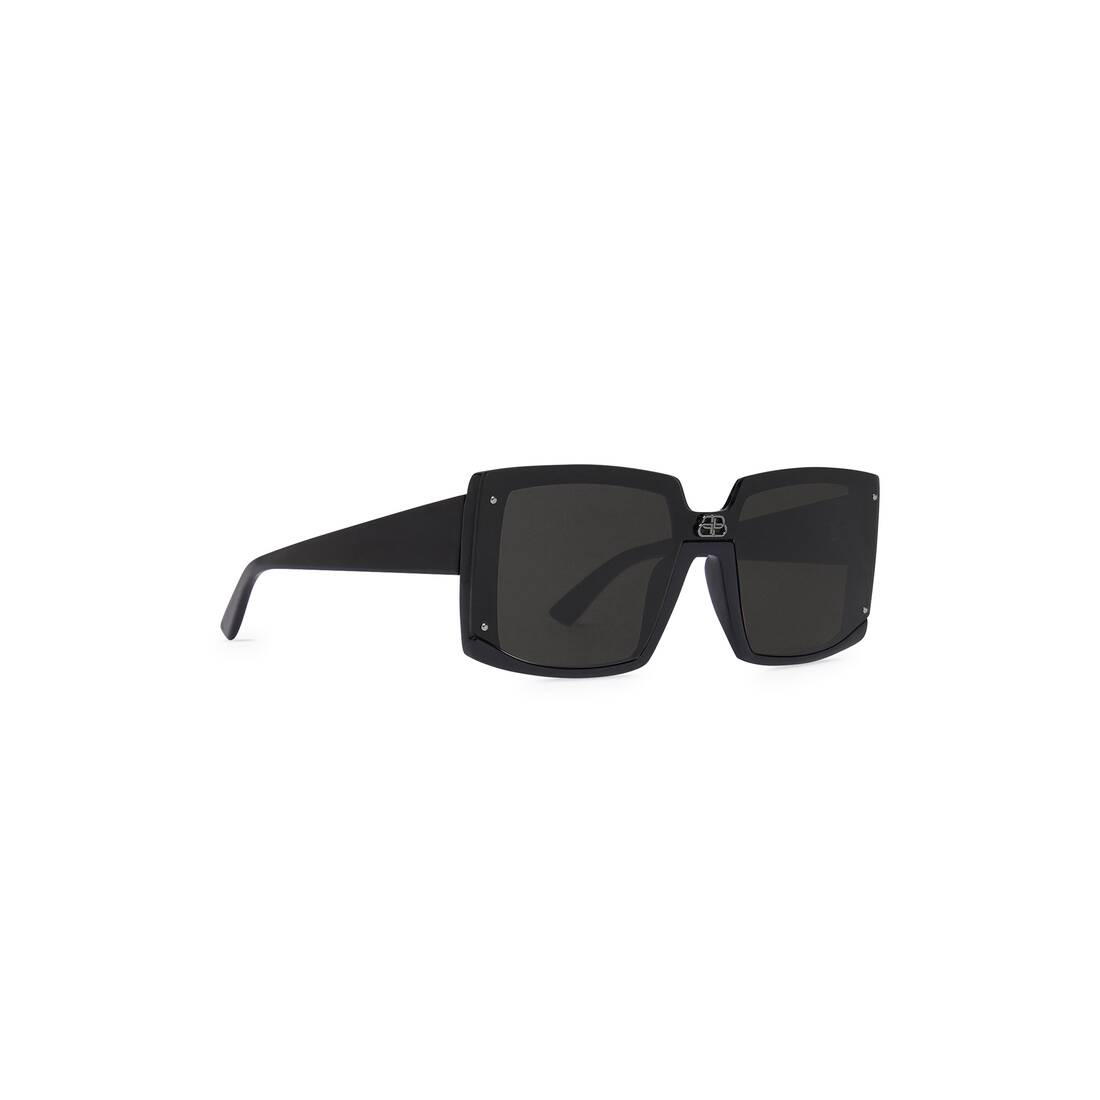 Shield Square Sunglasses in Black